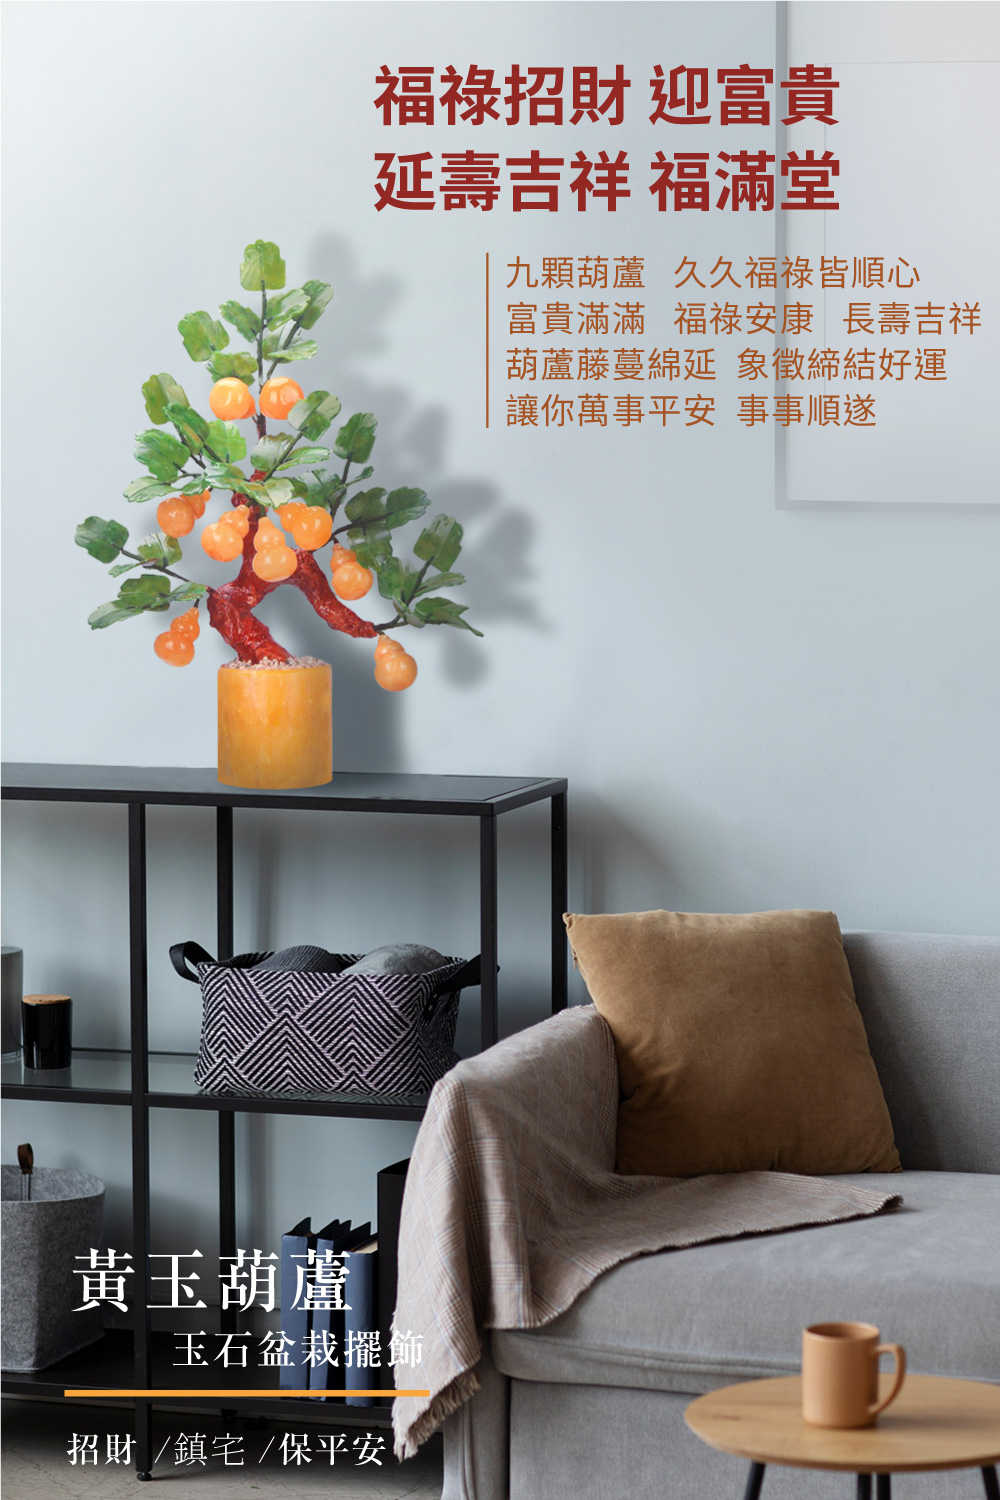 開運NOW-黃玉葫蘆玉石盆栽擺飾 產品說明